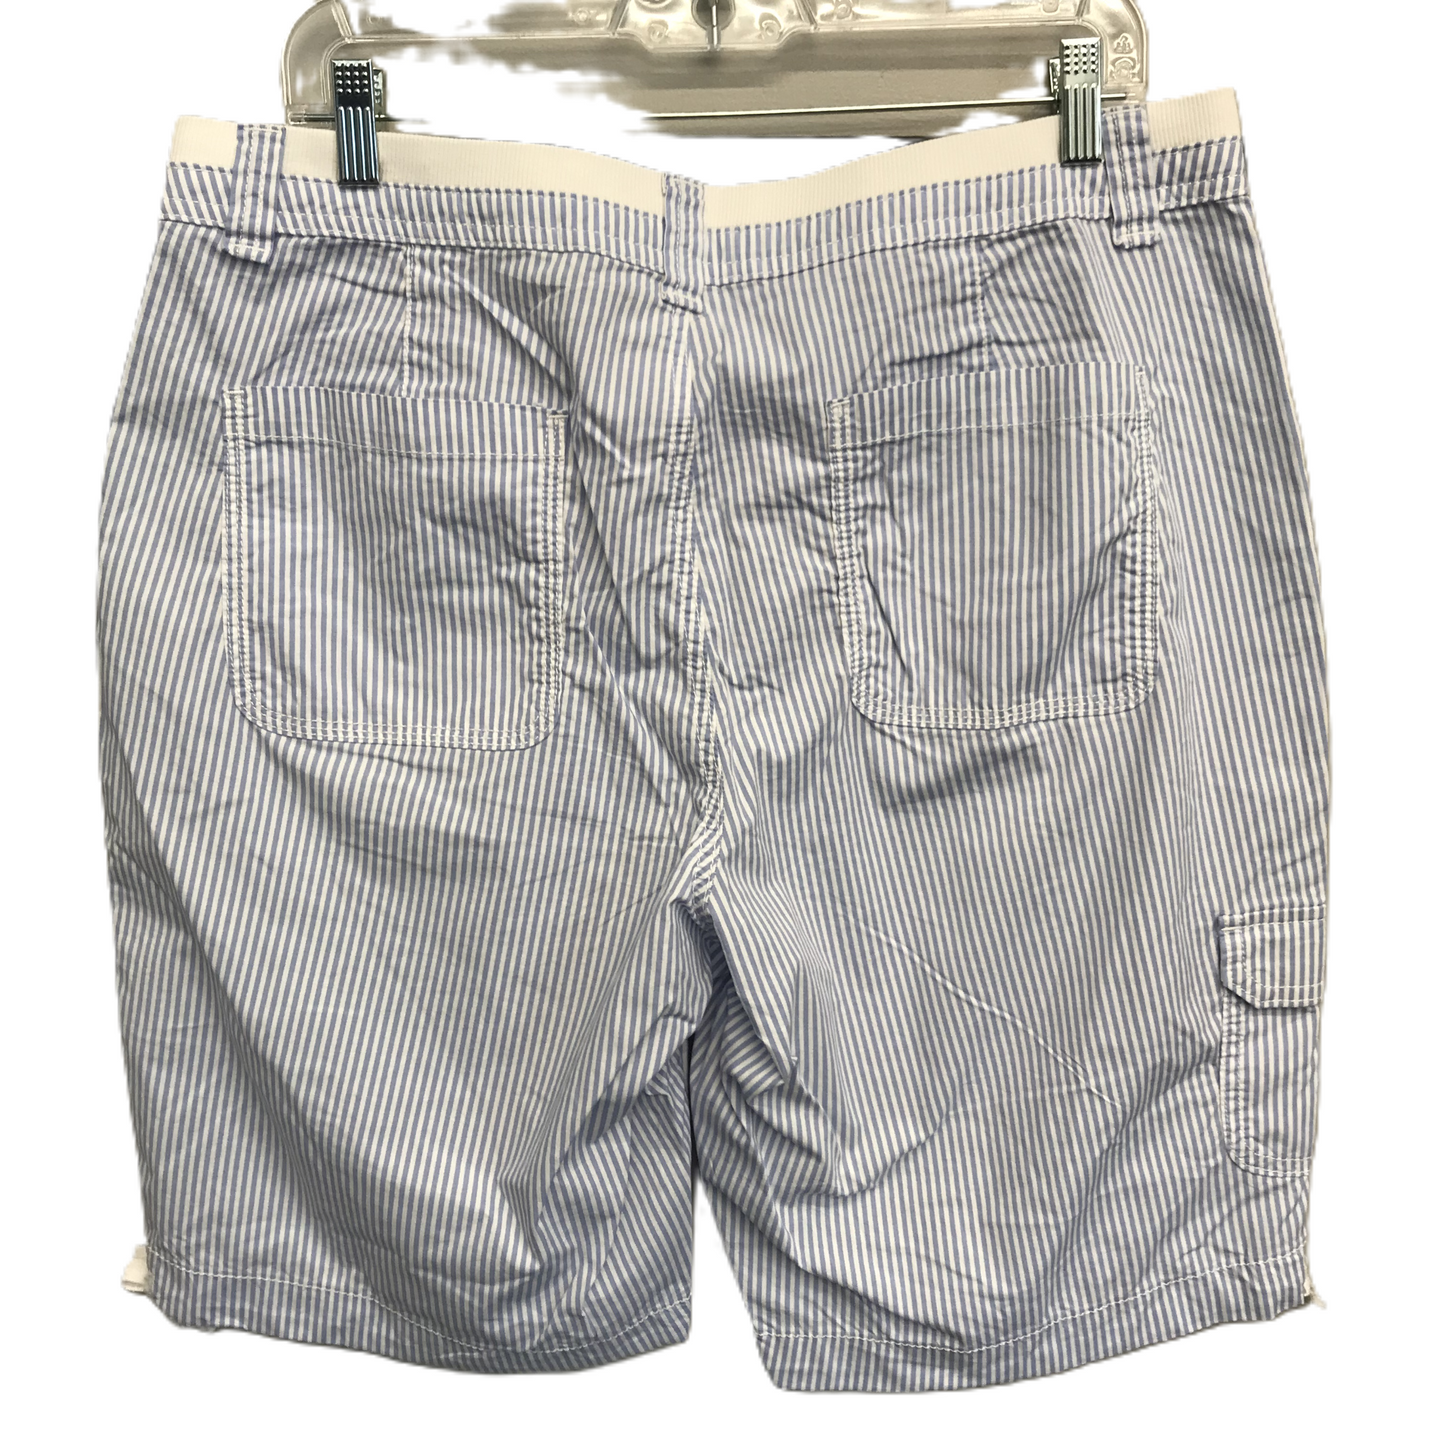 Striped Pattern Shorts By St Johns Bay, Size: 14